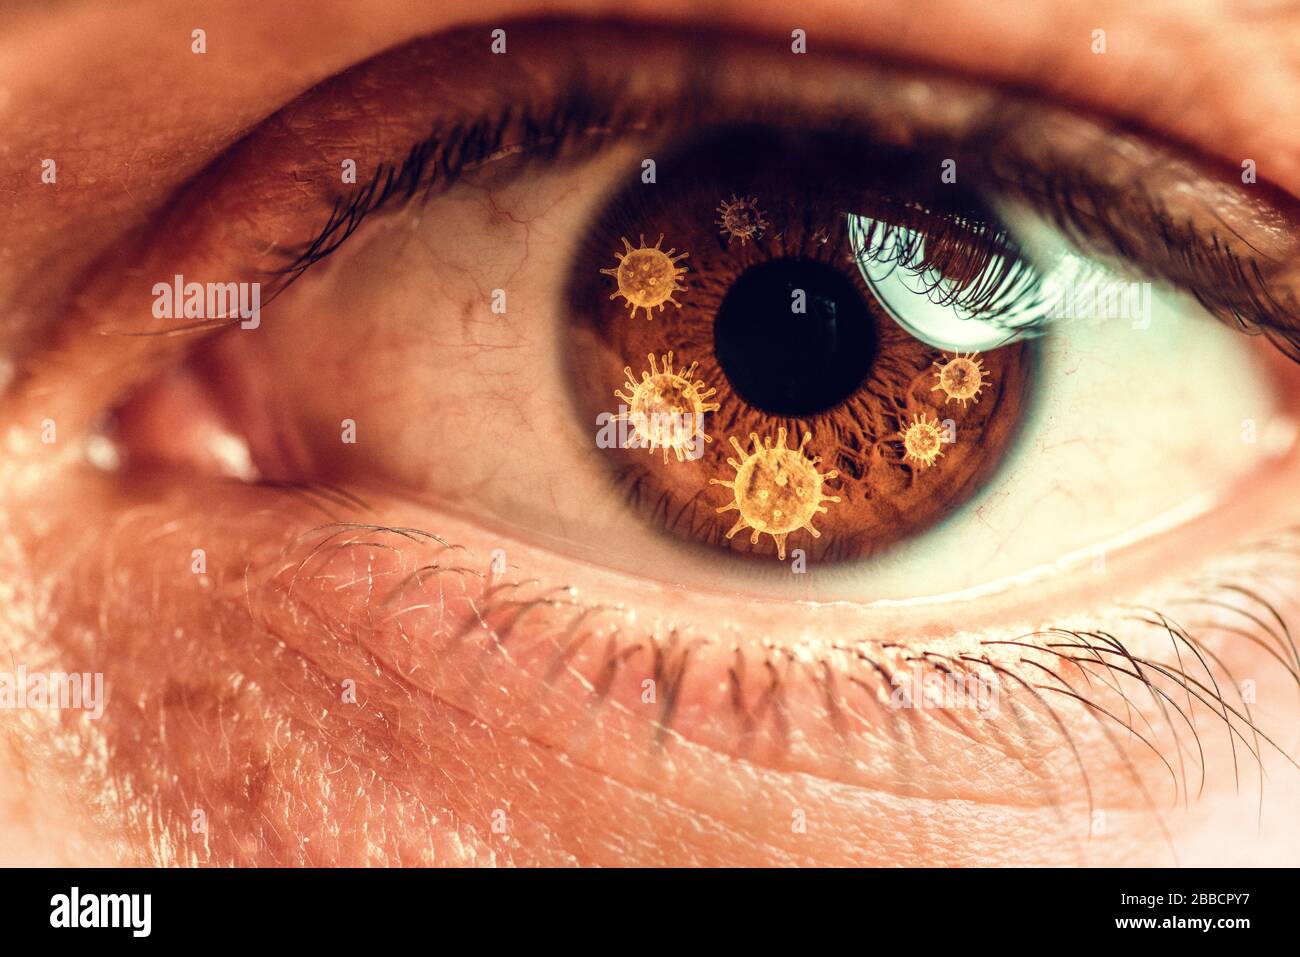 Gros plan, macro photo de l'oeil humain, iris, pupille, cils, paupières. Thème abstrait du virus corona Banque D'Images